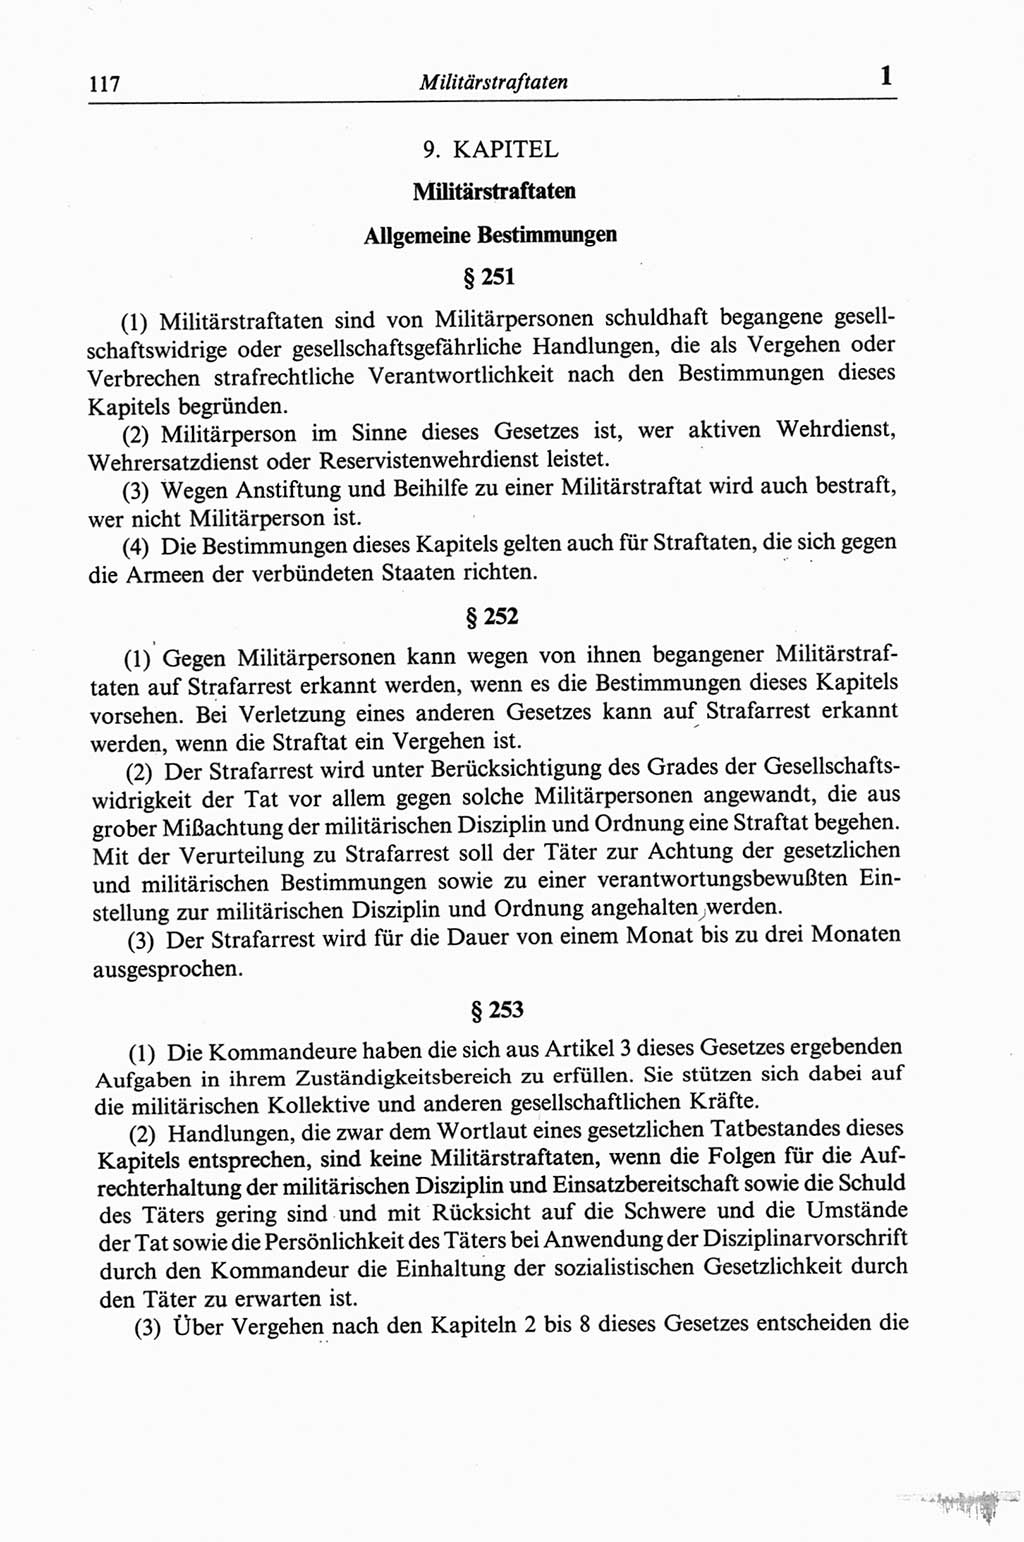 Strafgesetzbuch (StGB) der Deutschen Demokratischen Republik (DDR) und angrenzende Gesetze und Bestimmungen 1968, Seite 117 (StGB Ges. Best. DDR 1968, S. 117)